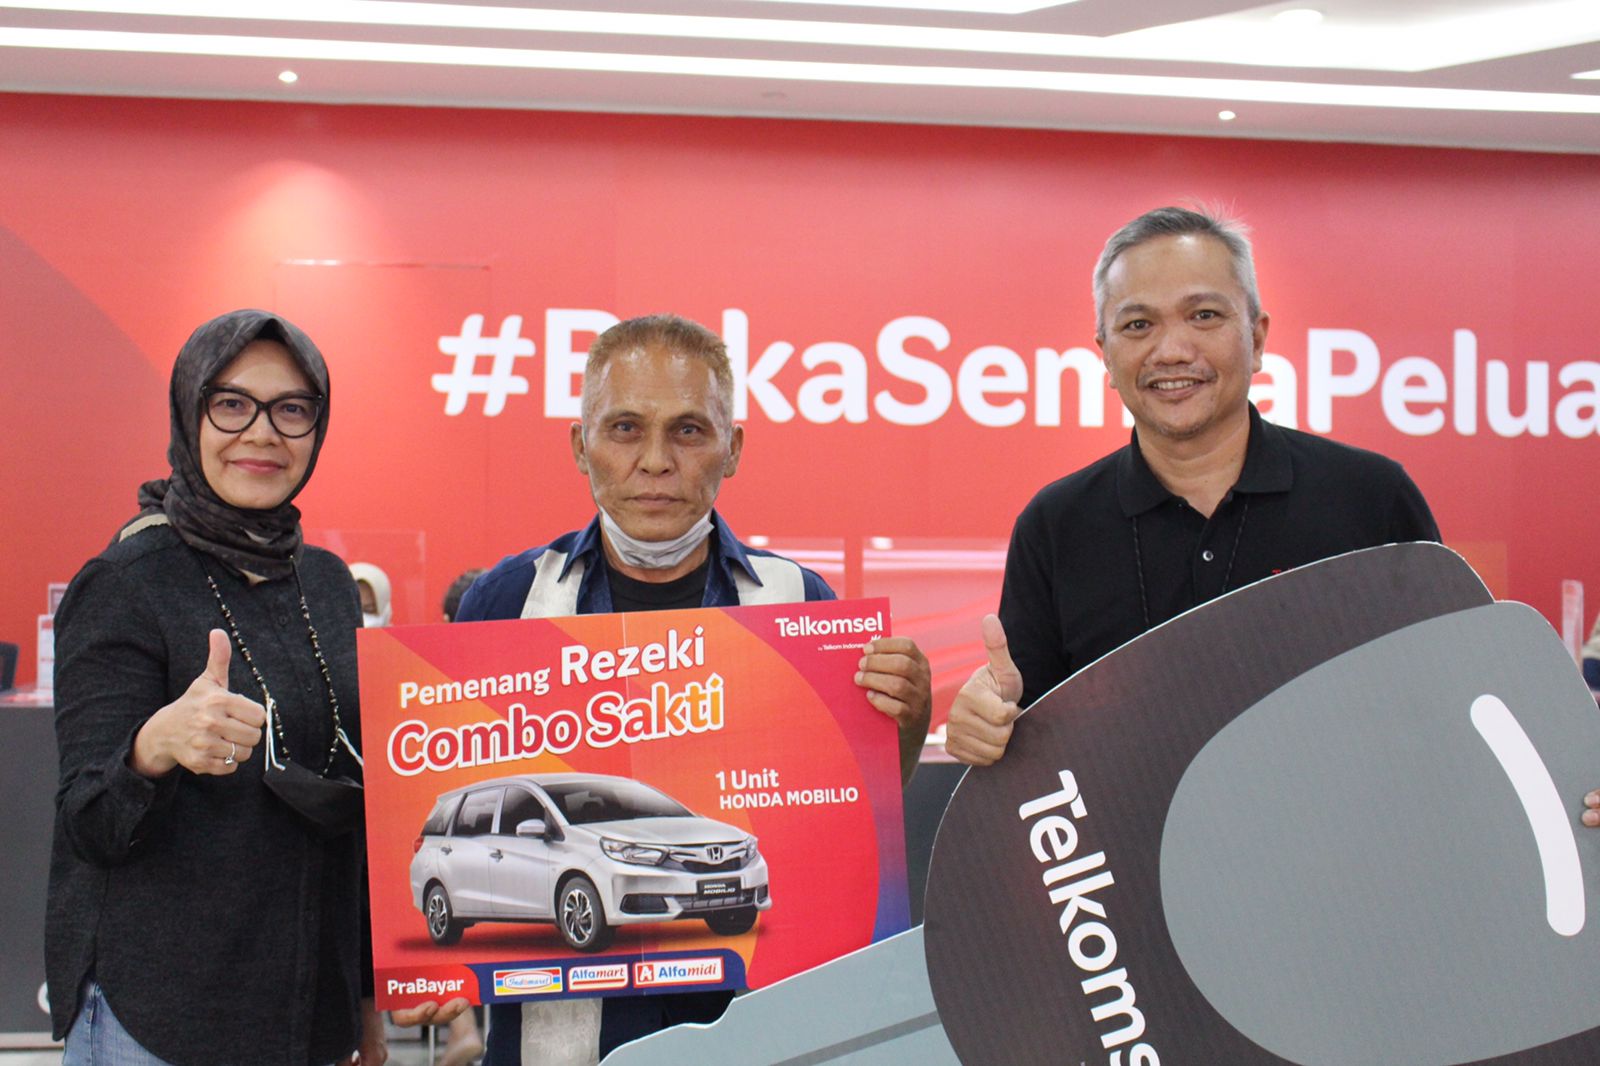 Pelanggan Setia Telkomsel asal Depok Berhasil Membawa Pulang 1 Unit mobil Honda Mobilio